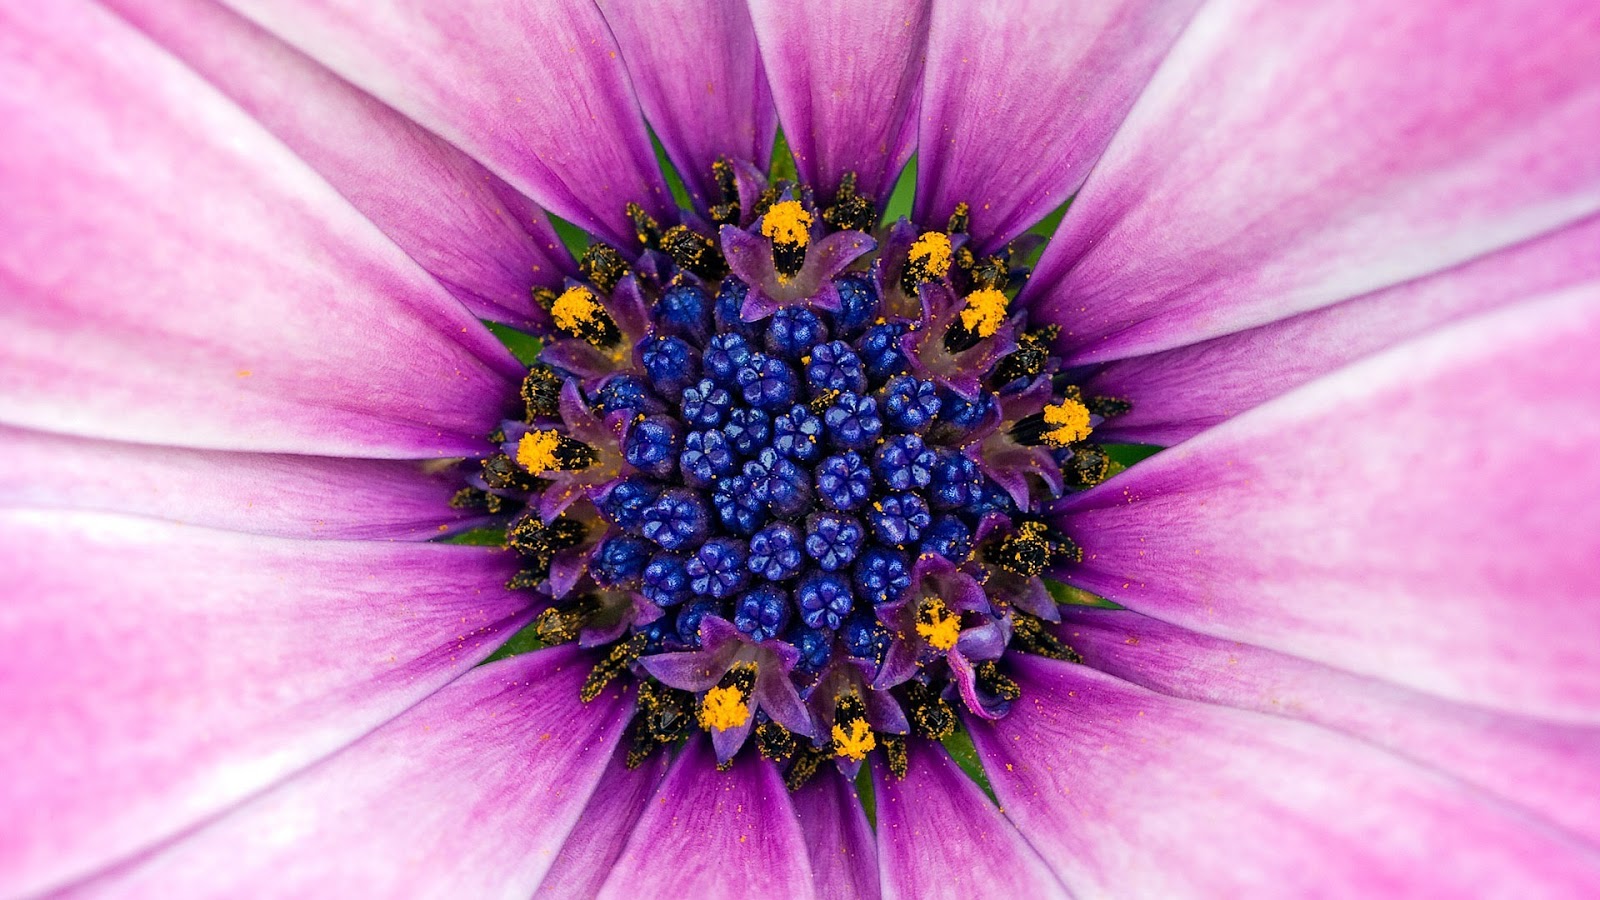 flower wallpaper hd,flower,flowering plant,petal,african daisy,purple